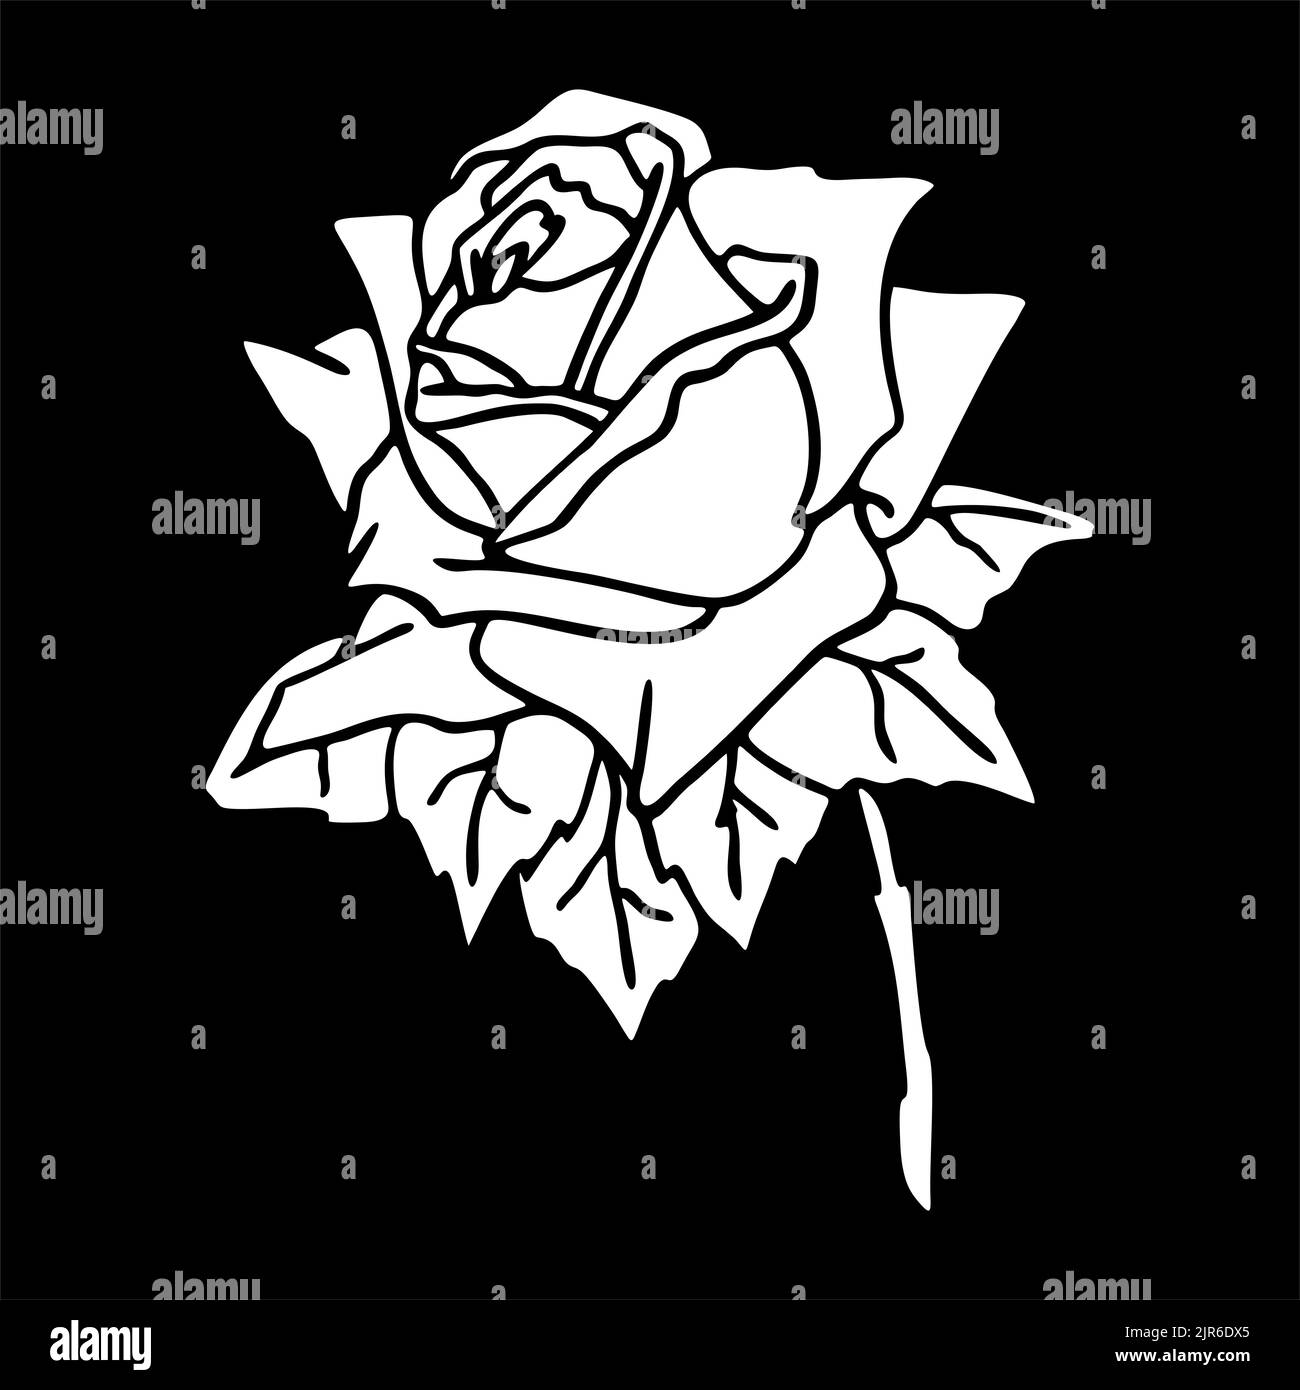 disegno bianco di una rosa su sfondo nero, silhouette di un fiore, elemento isolato, grafica, design Foto Stock